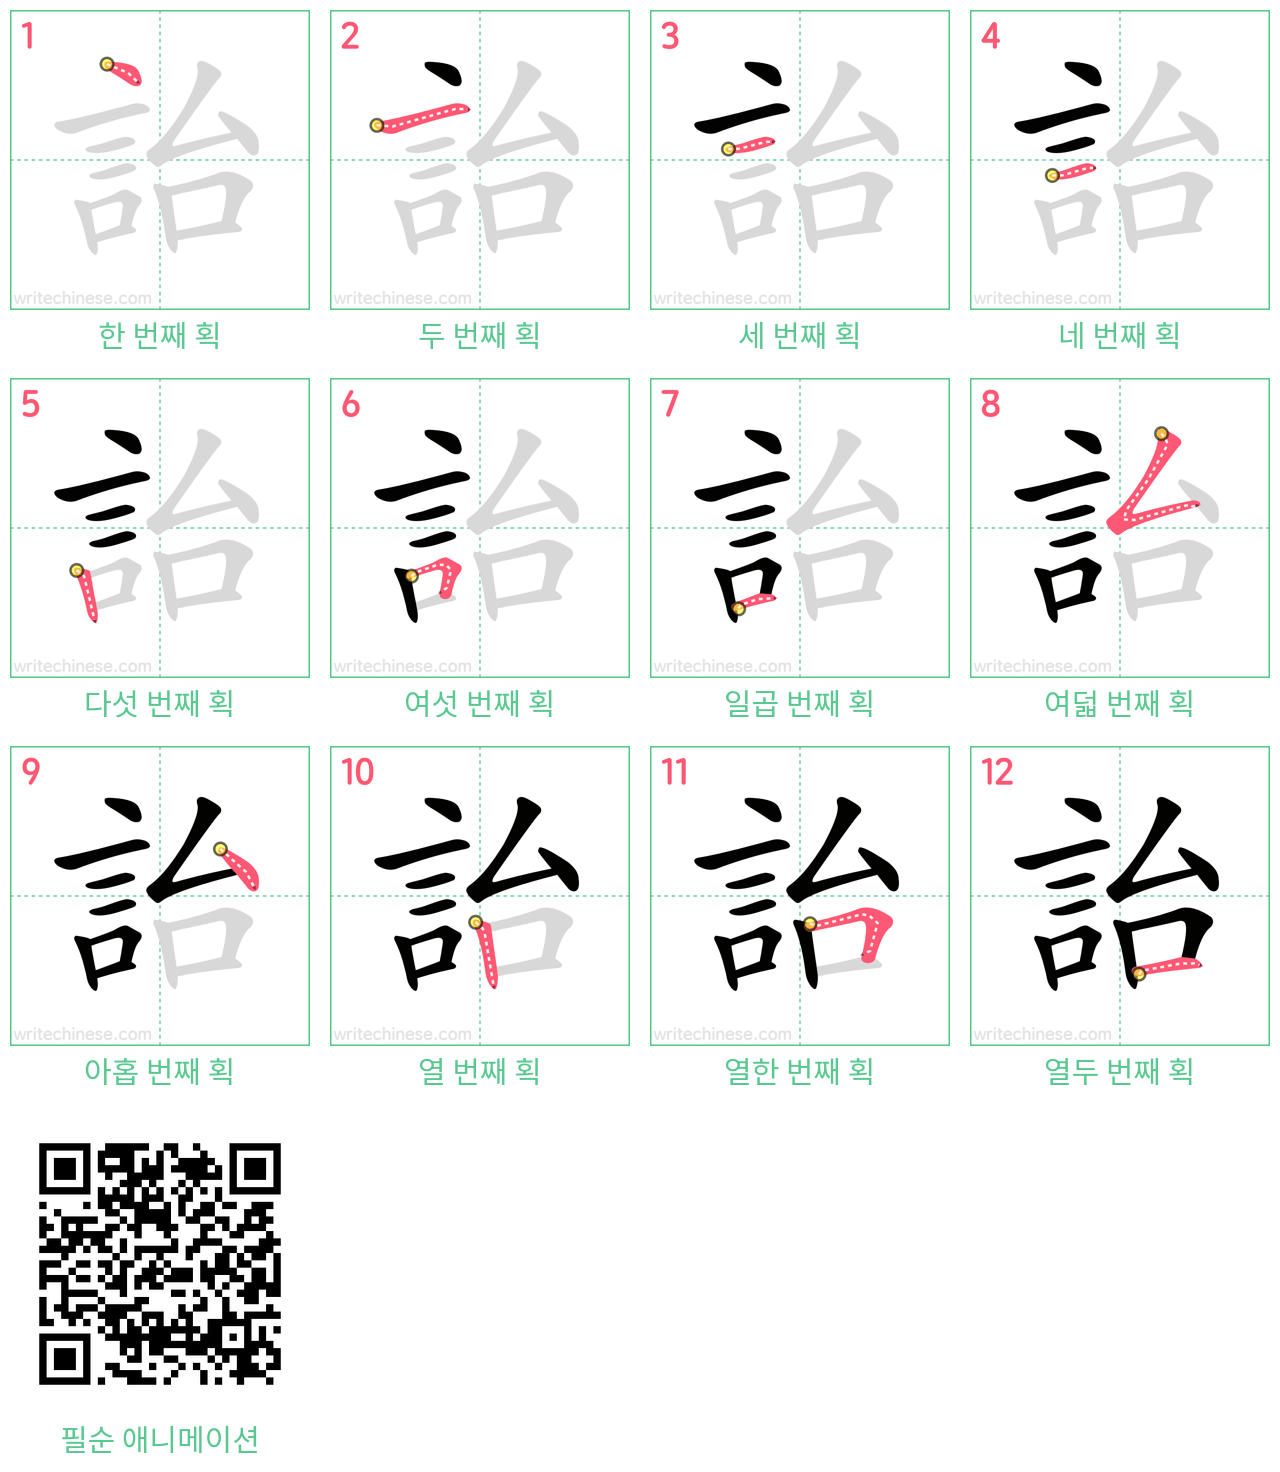 詒 step-by-step stroke order diagrams